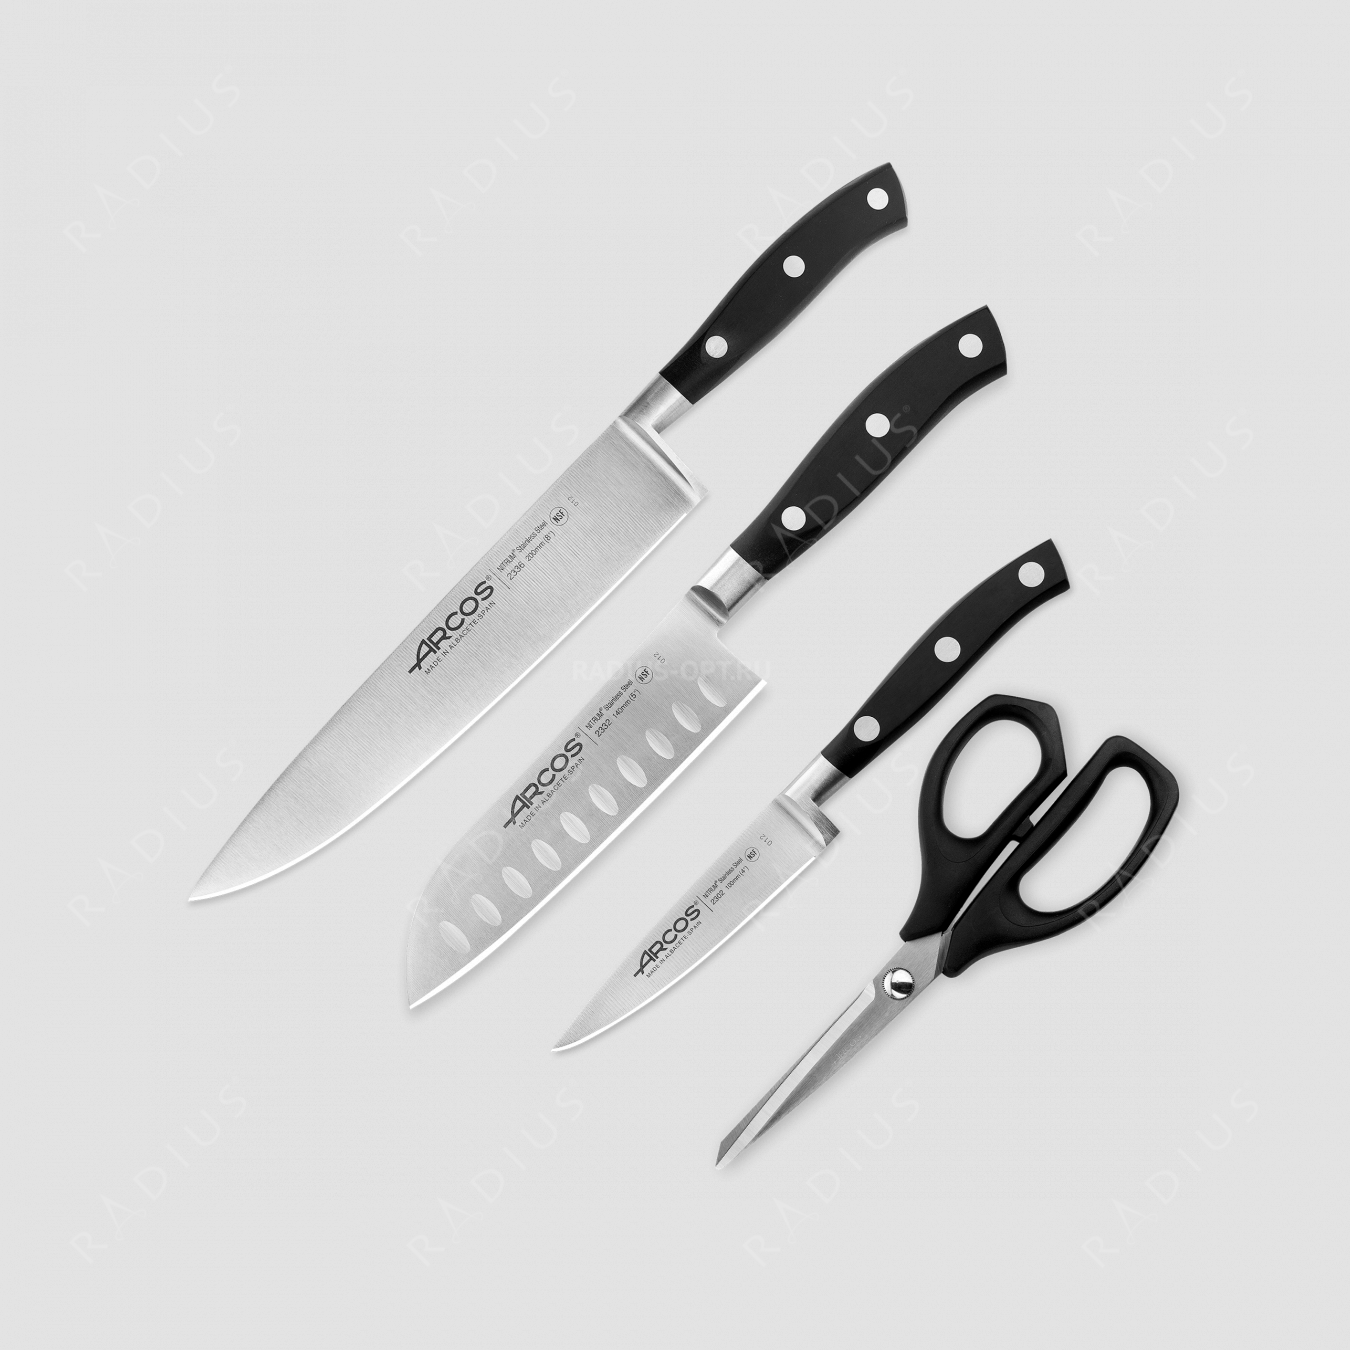 Набор кухонных ножей 3 шт (10 см, 14 см, 20 см,) ручки черные, серия Riviera, ARCOS, Испания